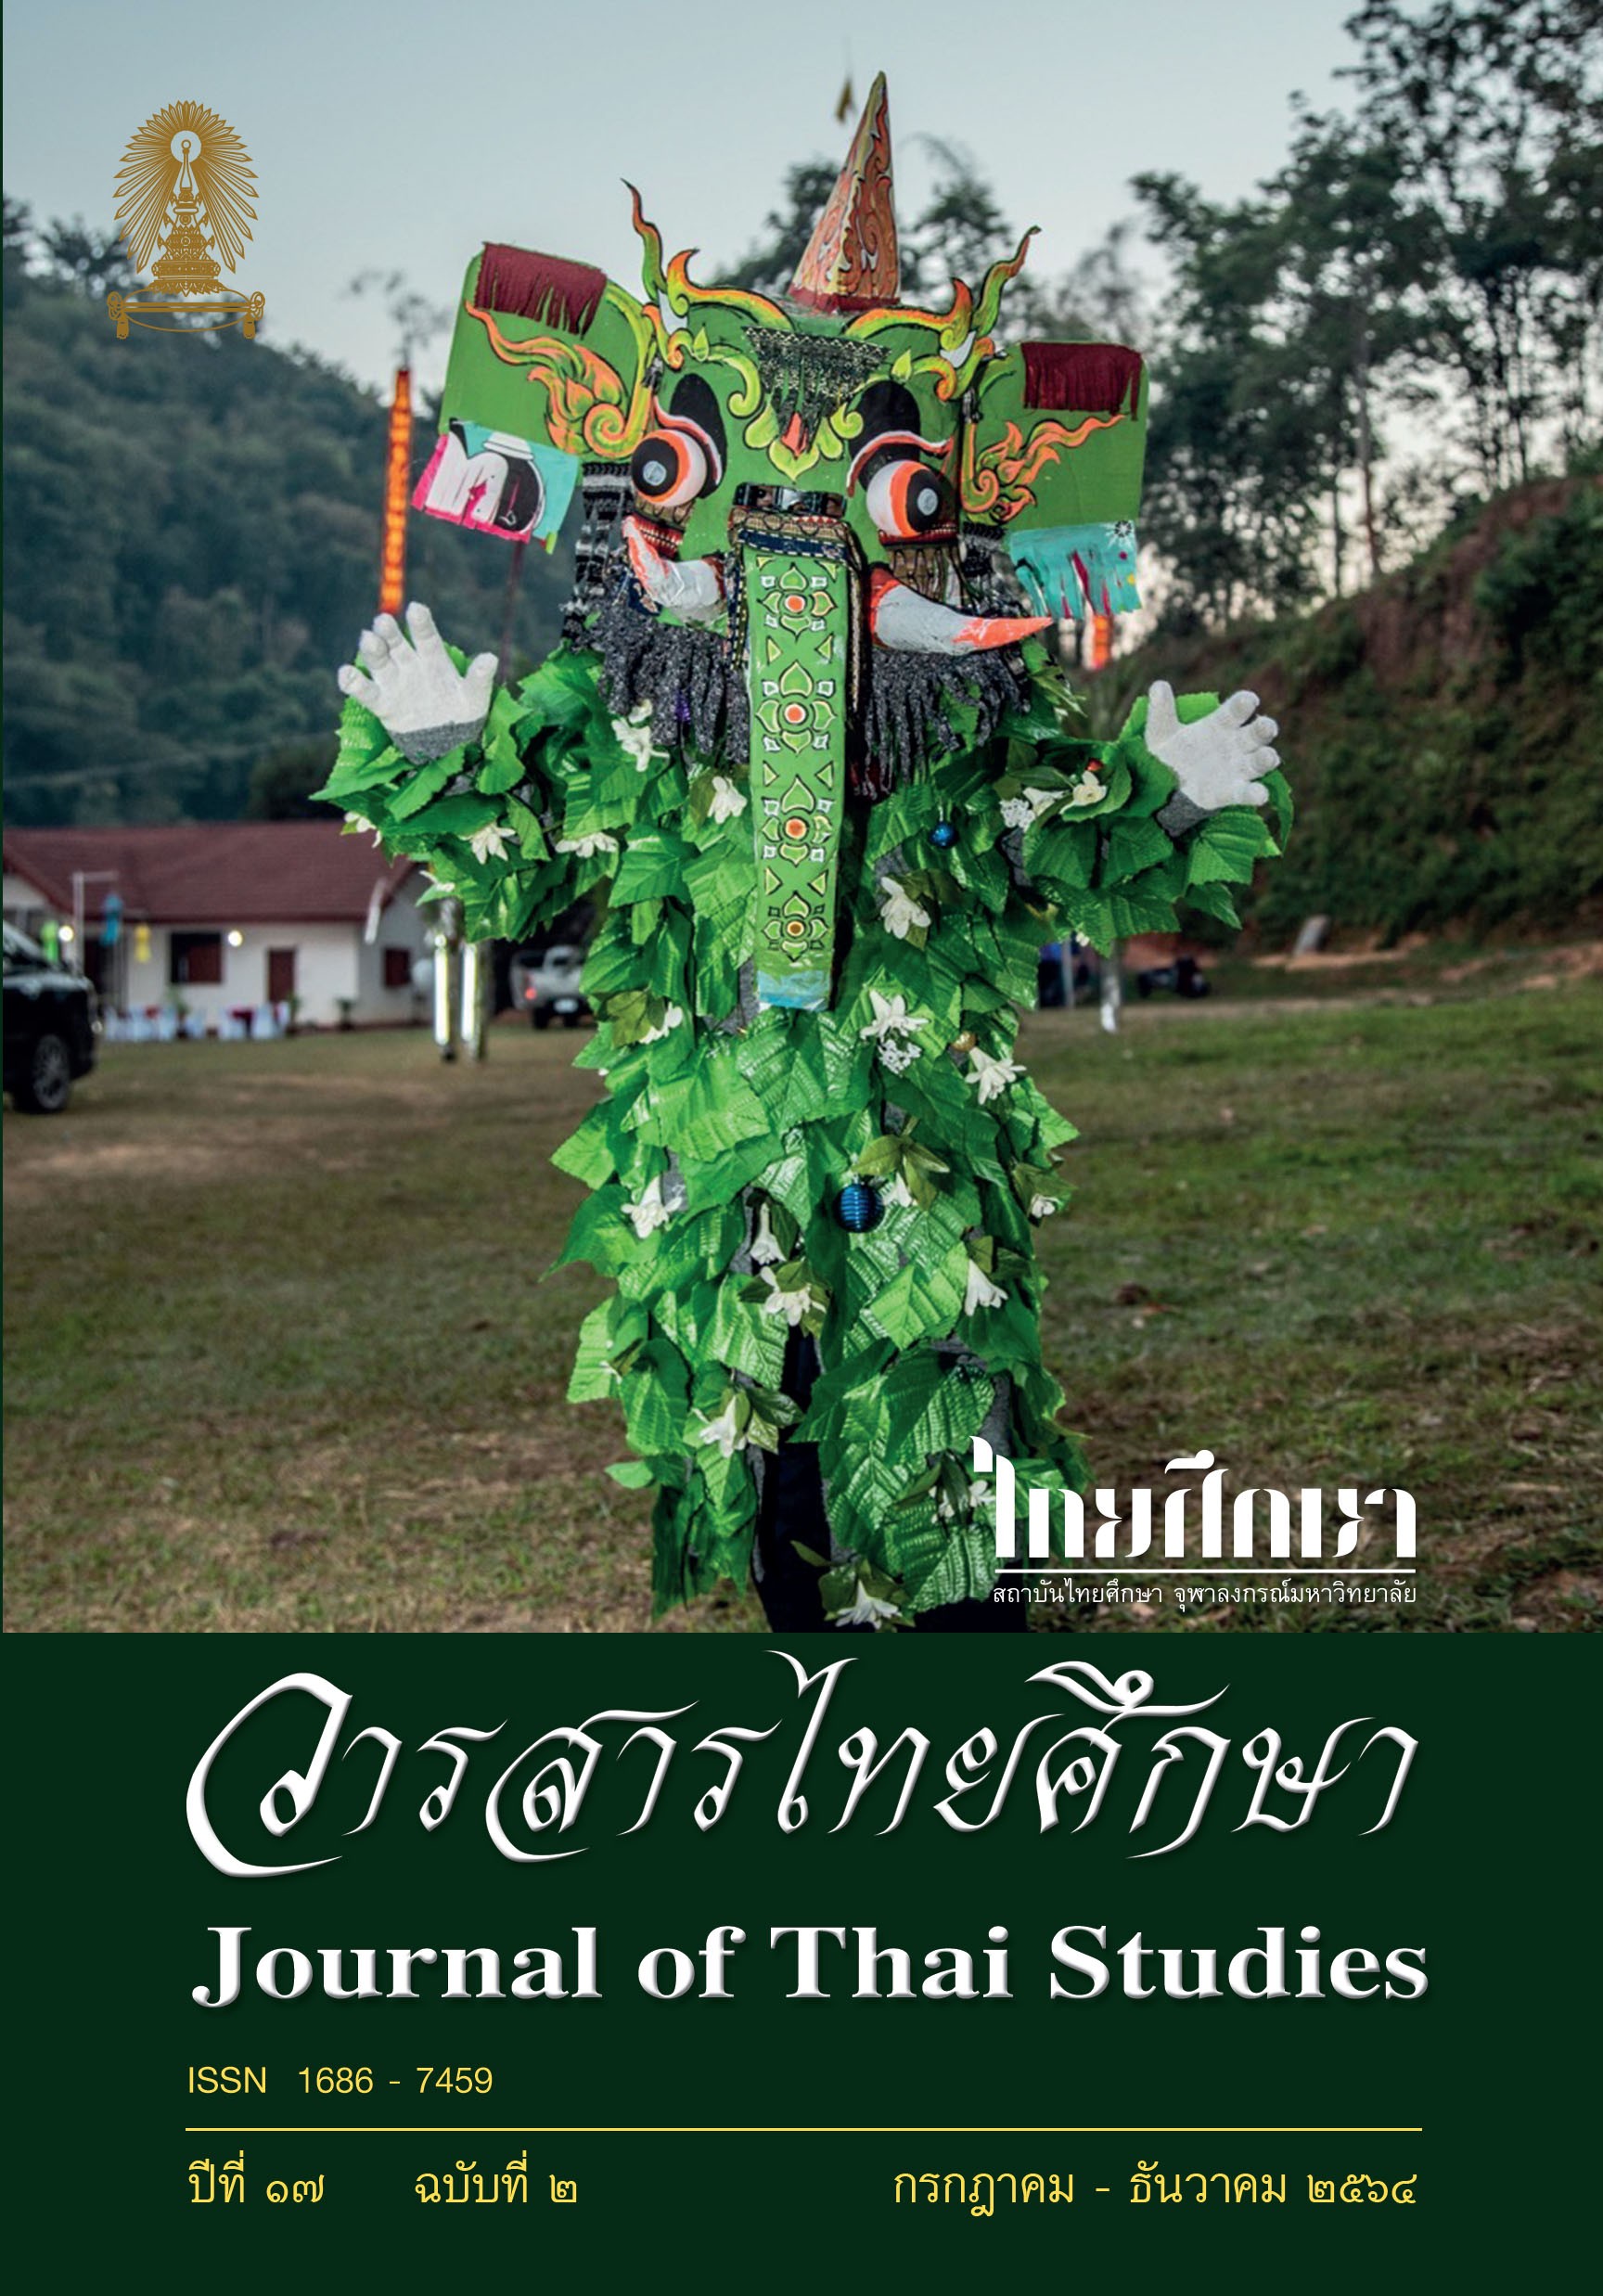 วารสารไทยศึกษา ปีที่ 17 ฉบับที่ 2 เดือนกรกฎาคม-ธันวาคม 2564